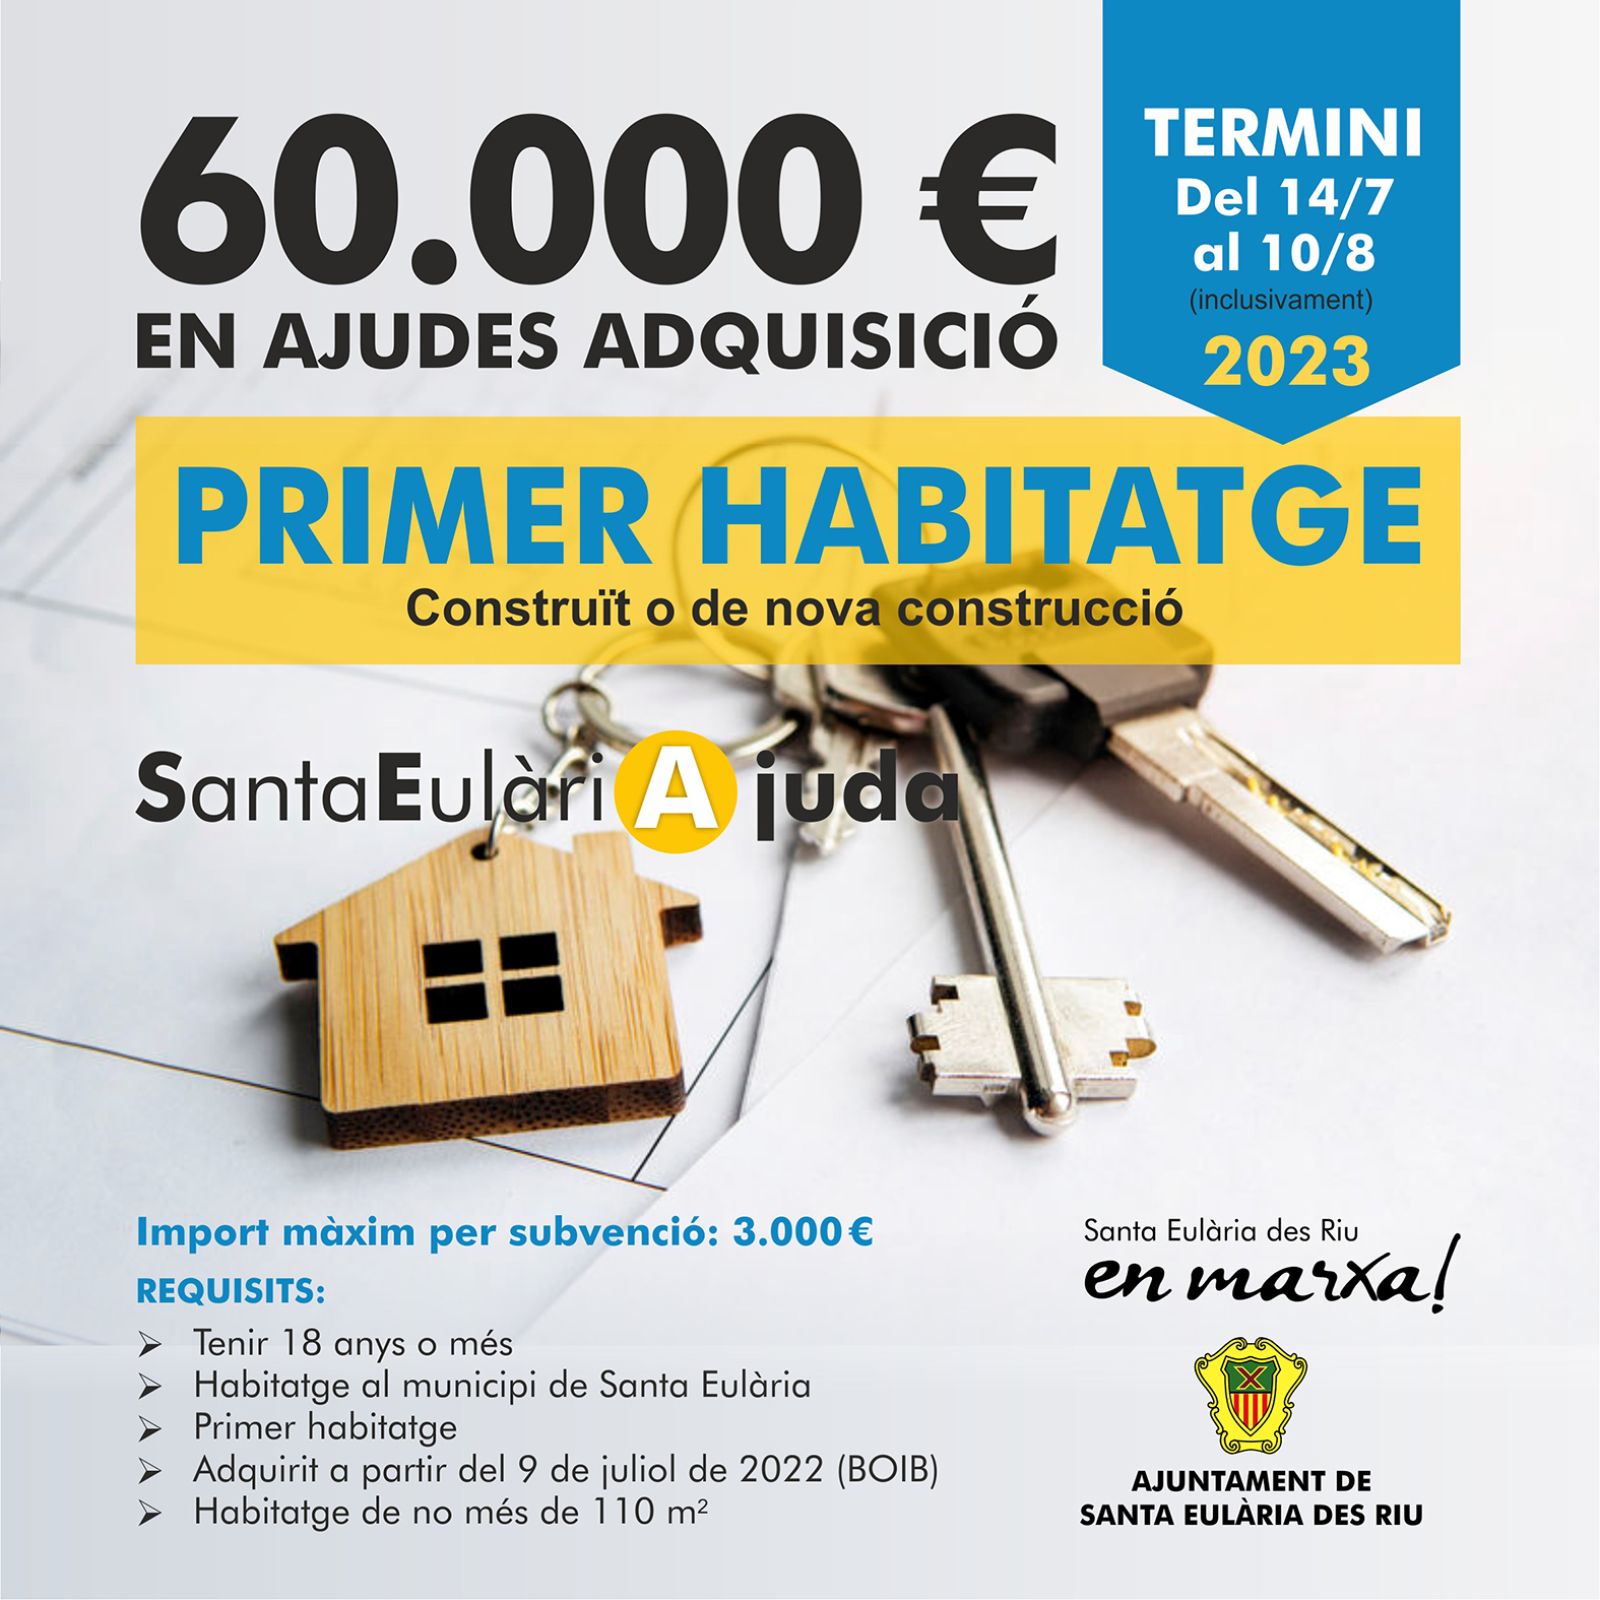 Obert fins al 10 d'agost el termini per a demanar fins a 3.000 euros per a alleujar les despeses derivades de la compra del primer habitatge